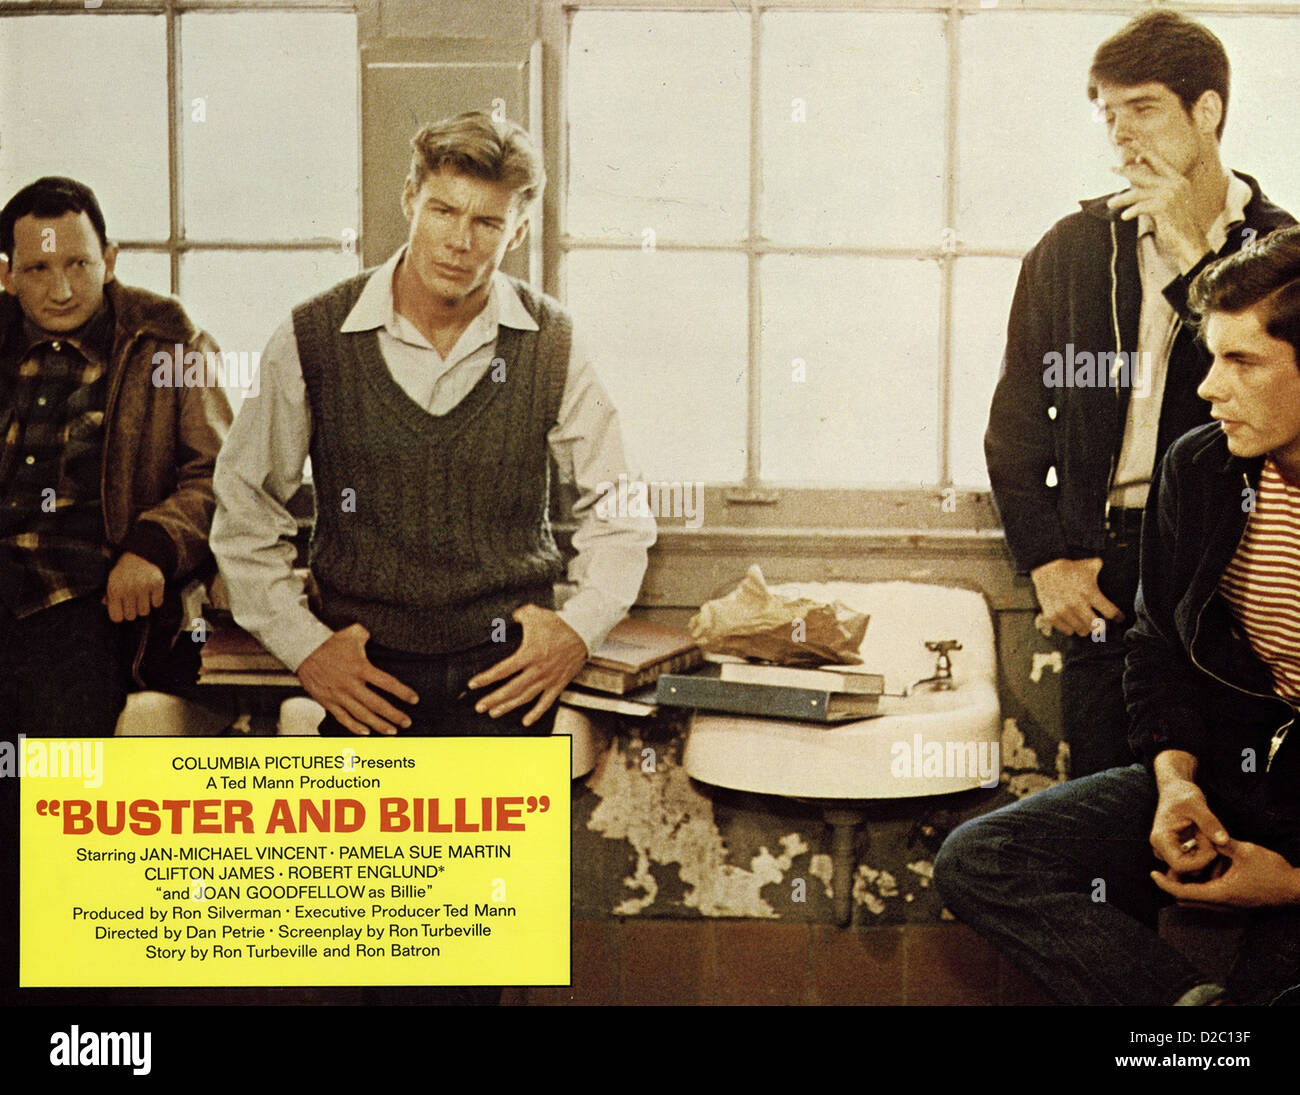 BUSTER AND BILLIE Original daybill Movie Poster Jan-Michael Vincent Joan  Goodfellow